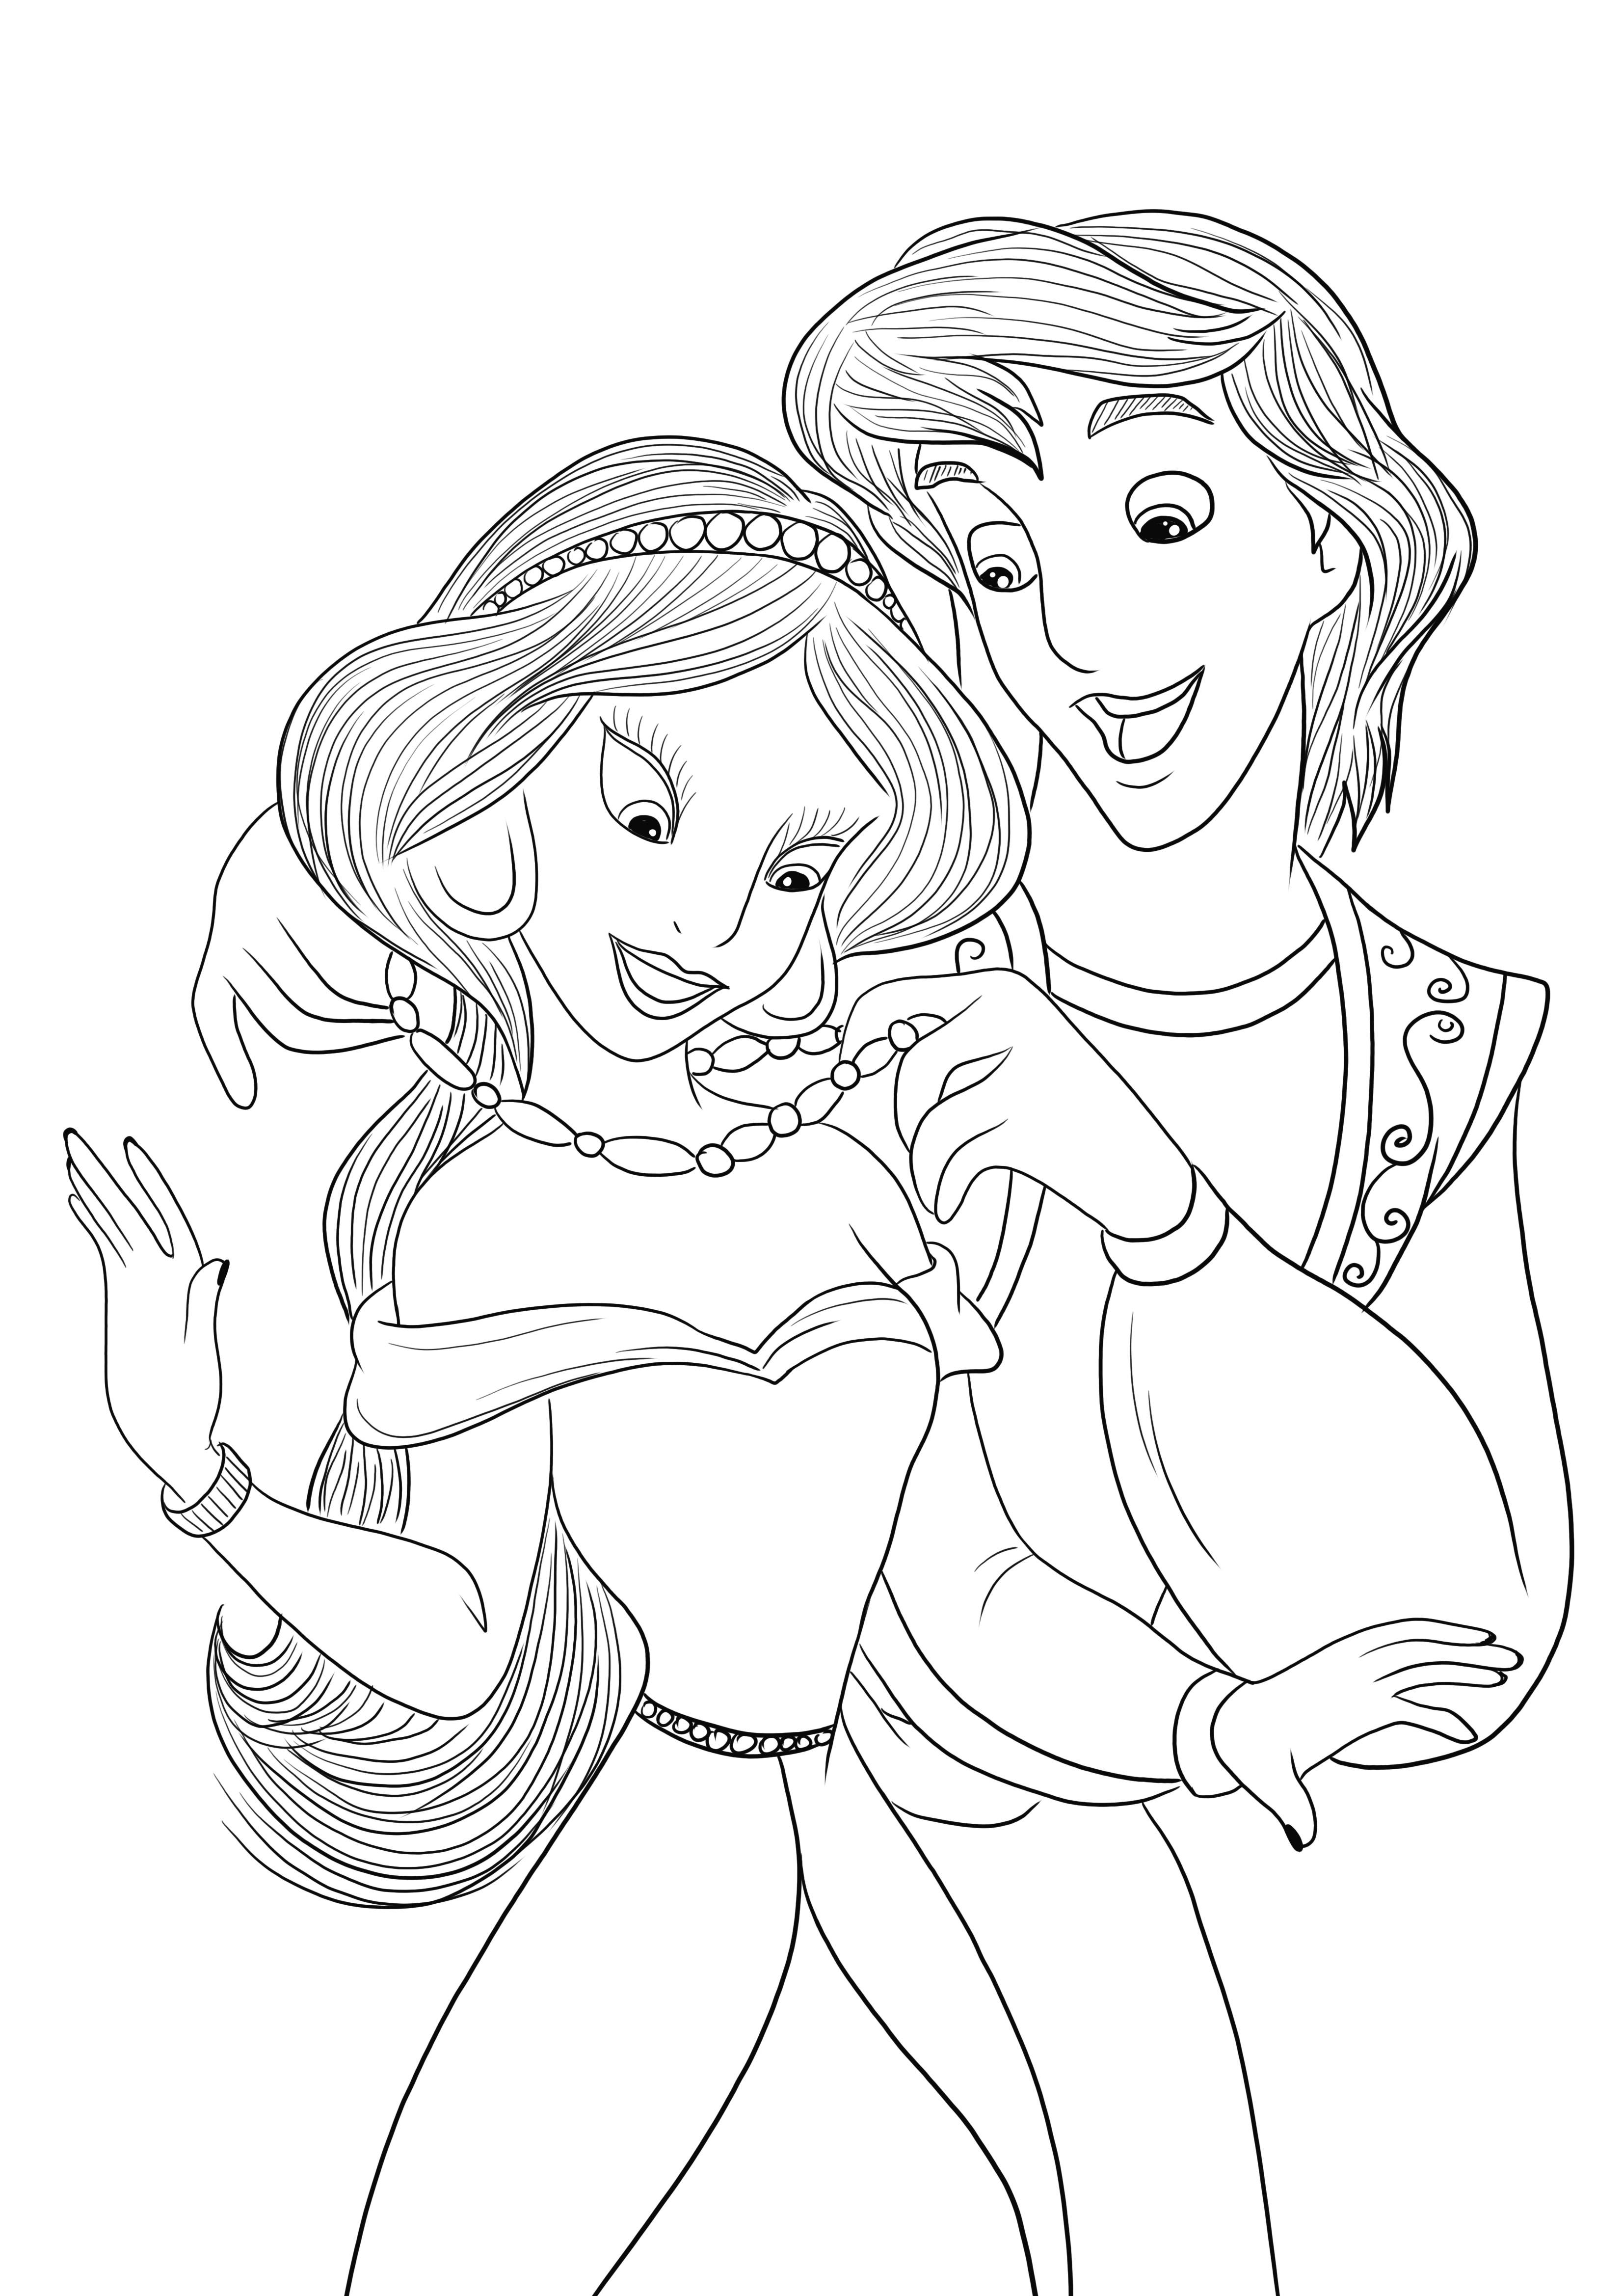 Download gratuito da imagem para colorir de Aladdin e Jasmine para as crianças colorirem